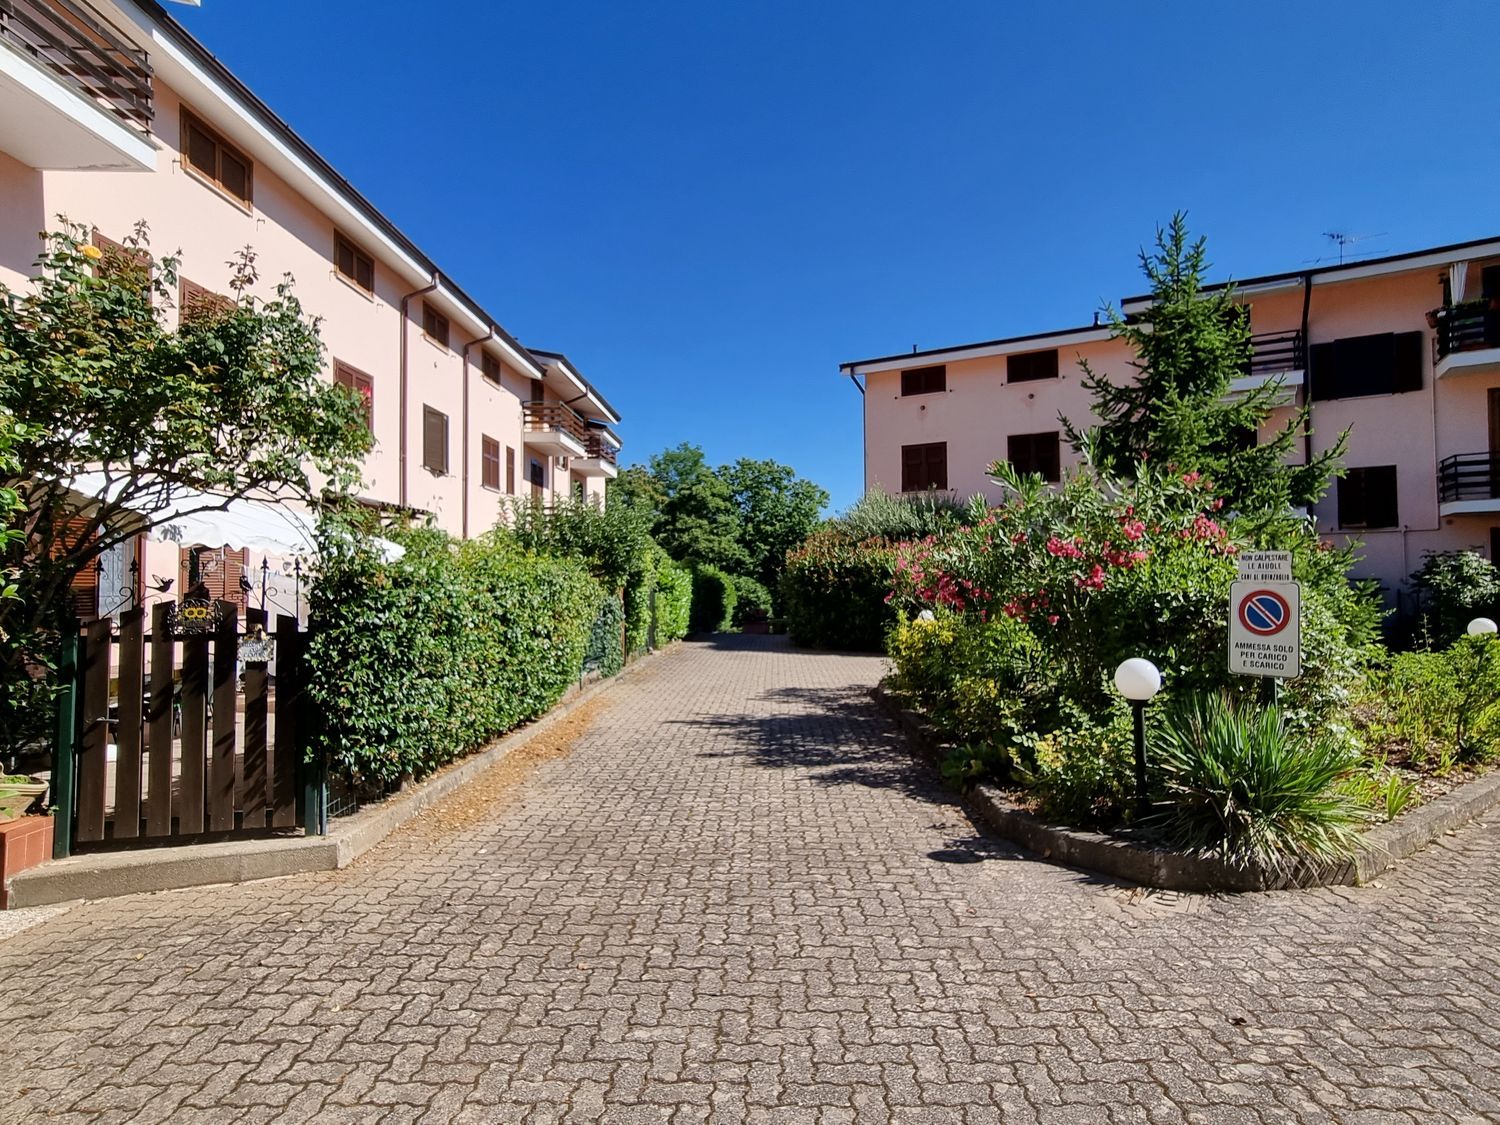 Appartamento in vendita a Levanto, 2 locali, prezzo € 49.000 | PortaleAgenzieImmobiliari.it